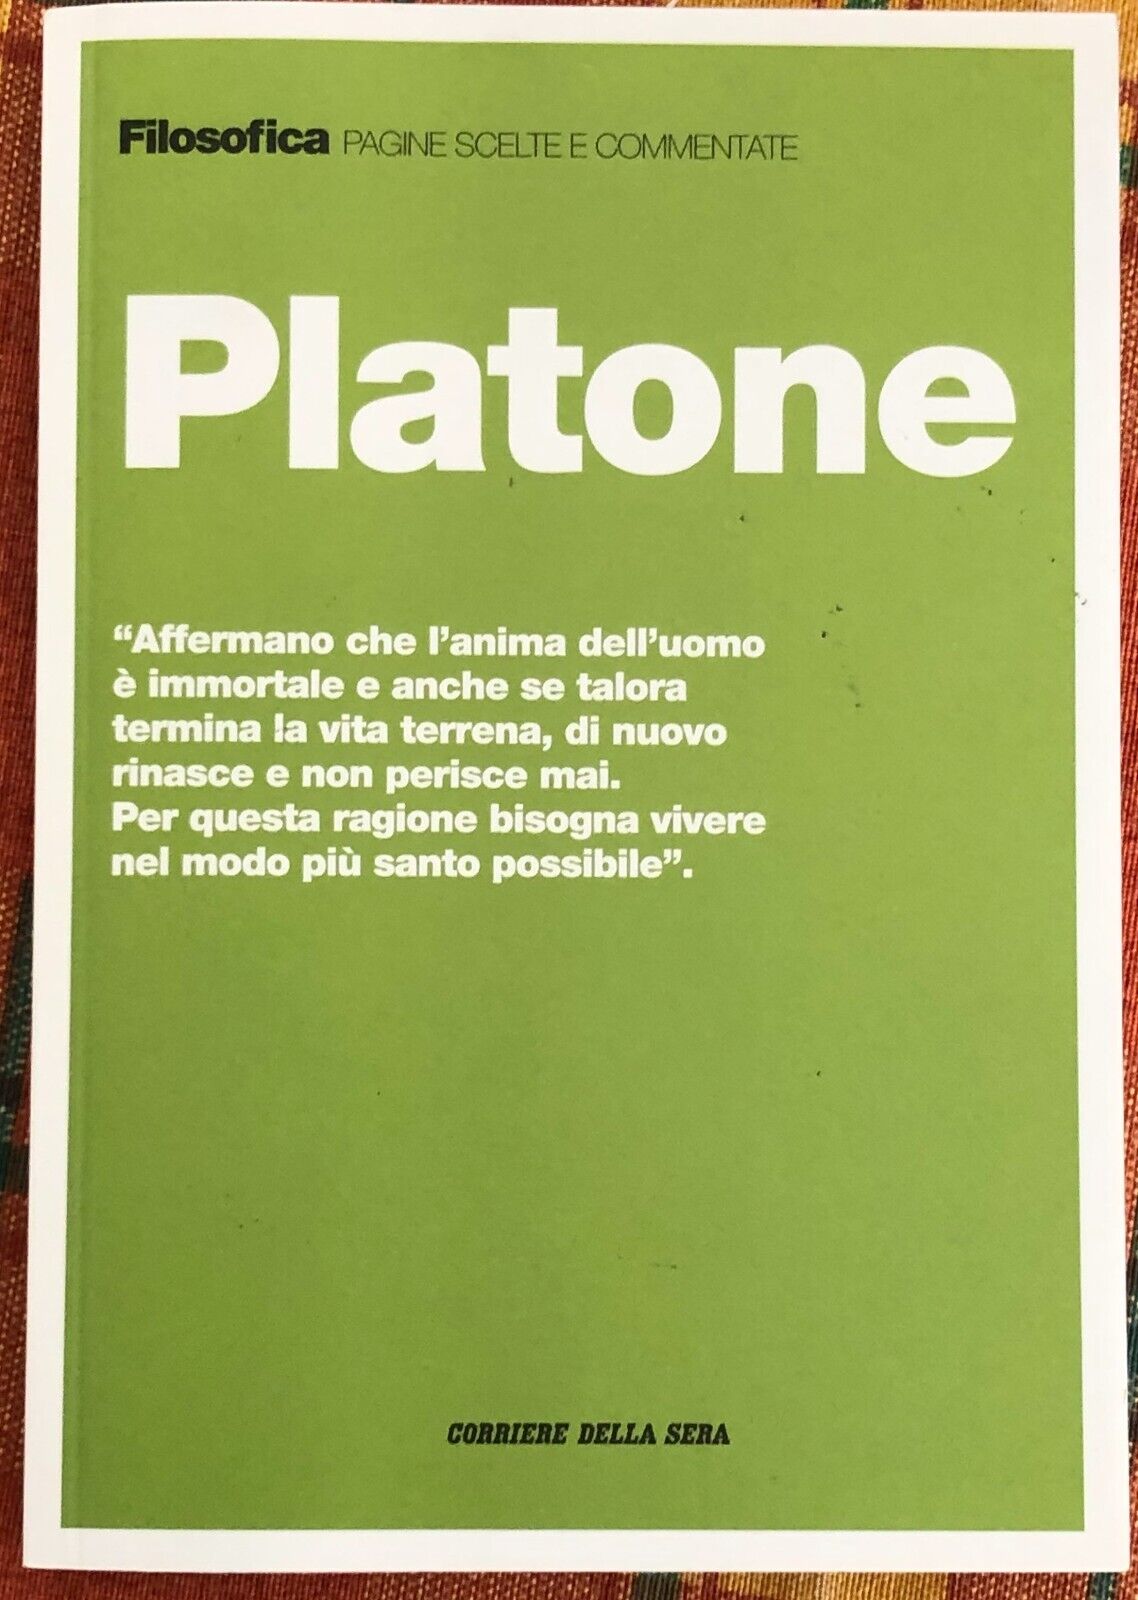 Filosofica. Pagine scelte e commentate n. 1 - Platone di Aa.vv., 2020, Corrie